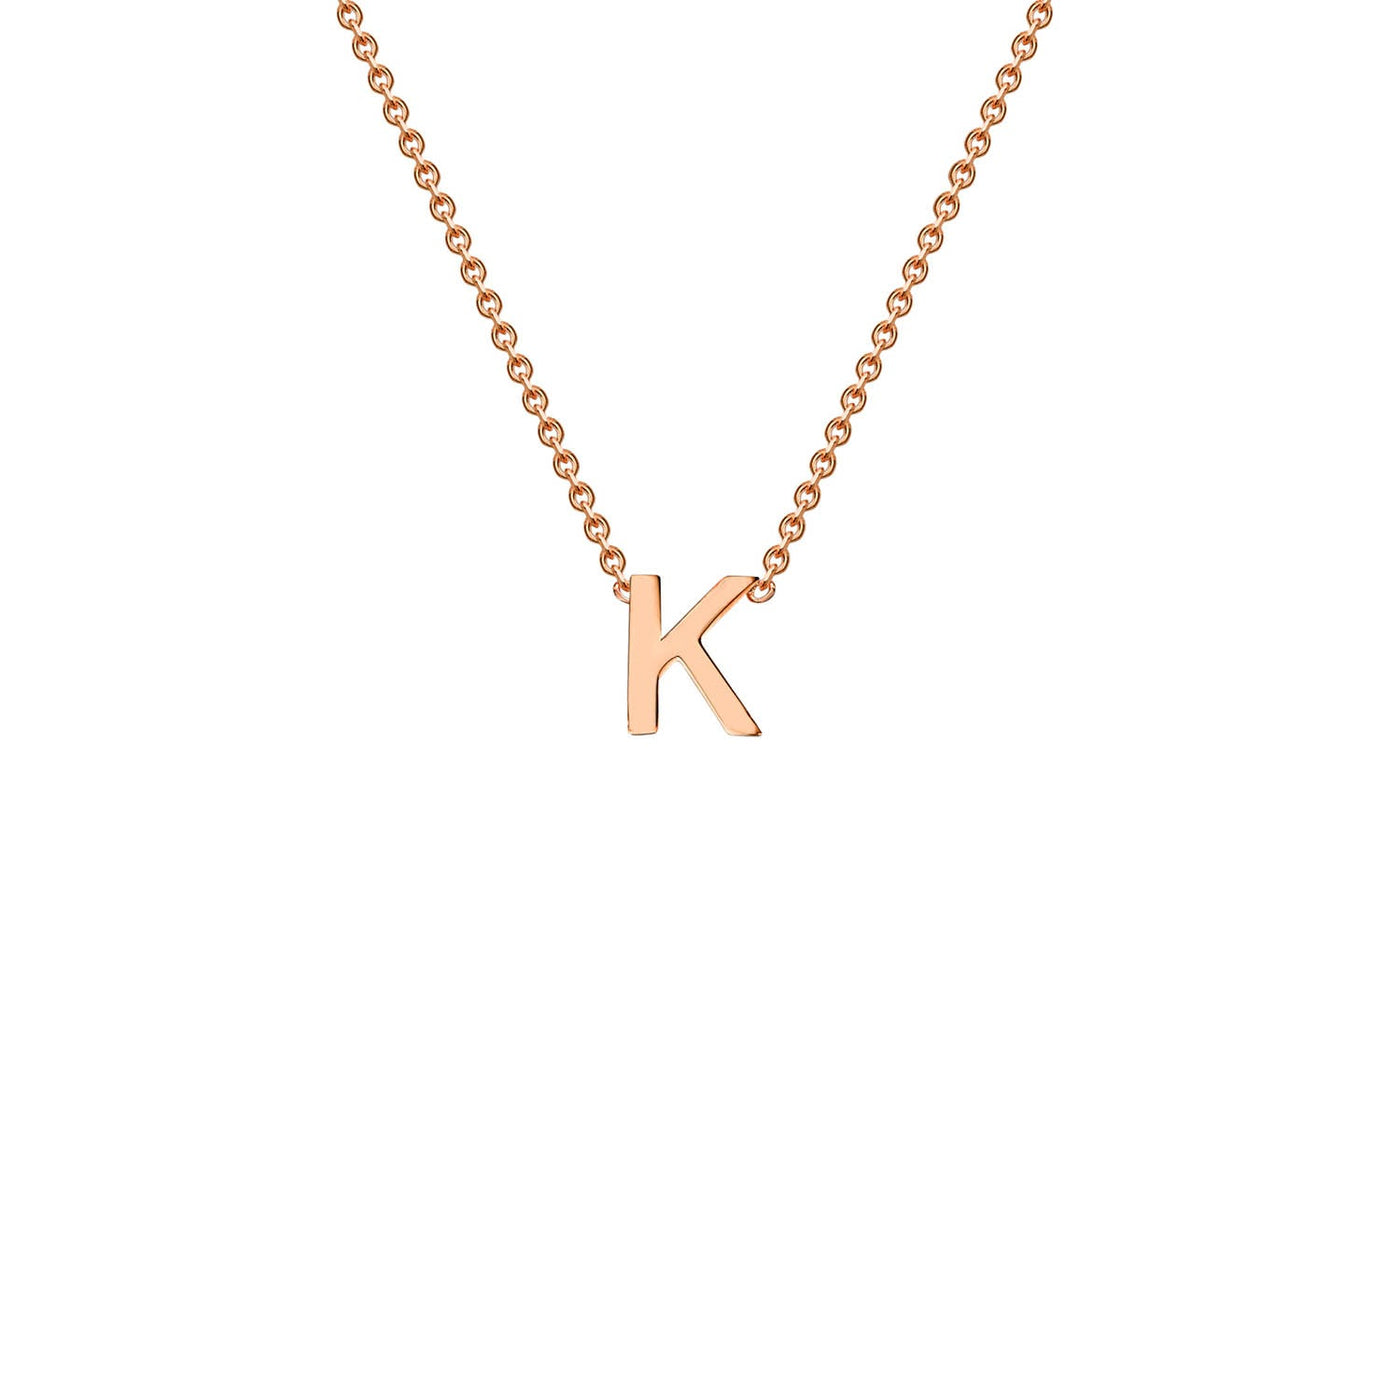 9K Rose Gold 'K' Initial Adjustable Letter Necklace 38/43cm